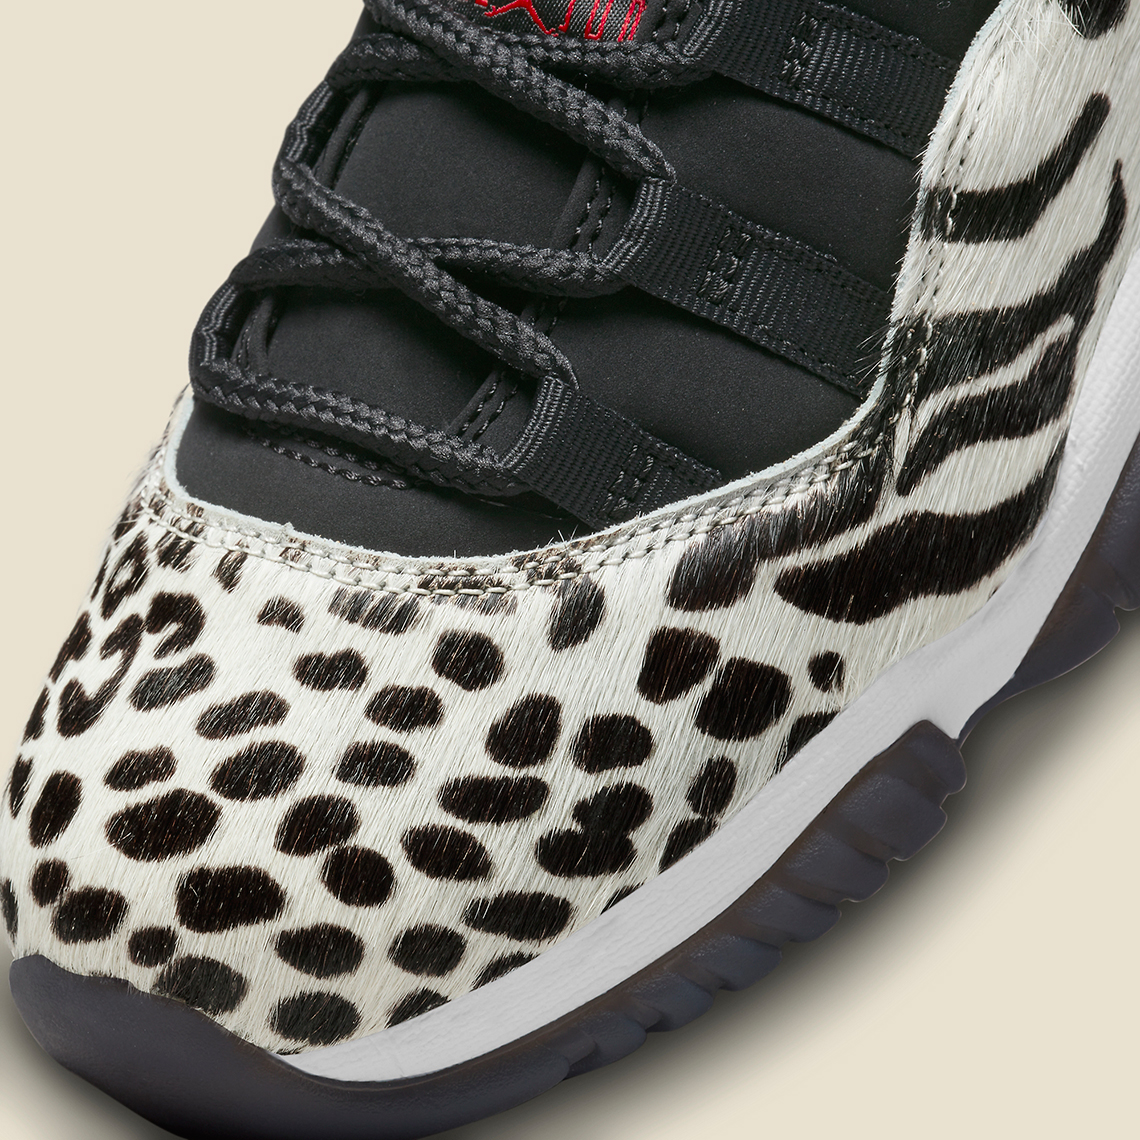 Жіночі кросівки nike air jordan sneakers спортивні Animal Instinct Ar0715 010 Official Images 5